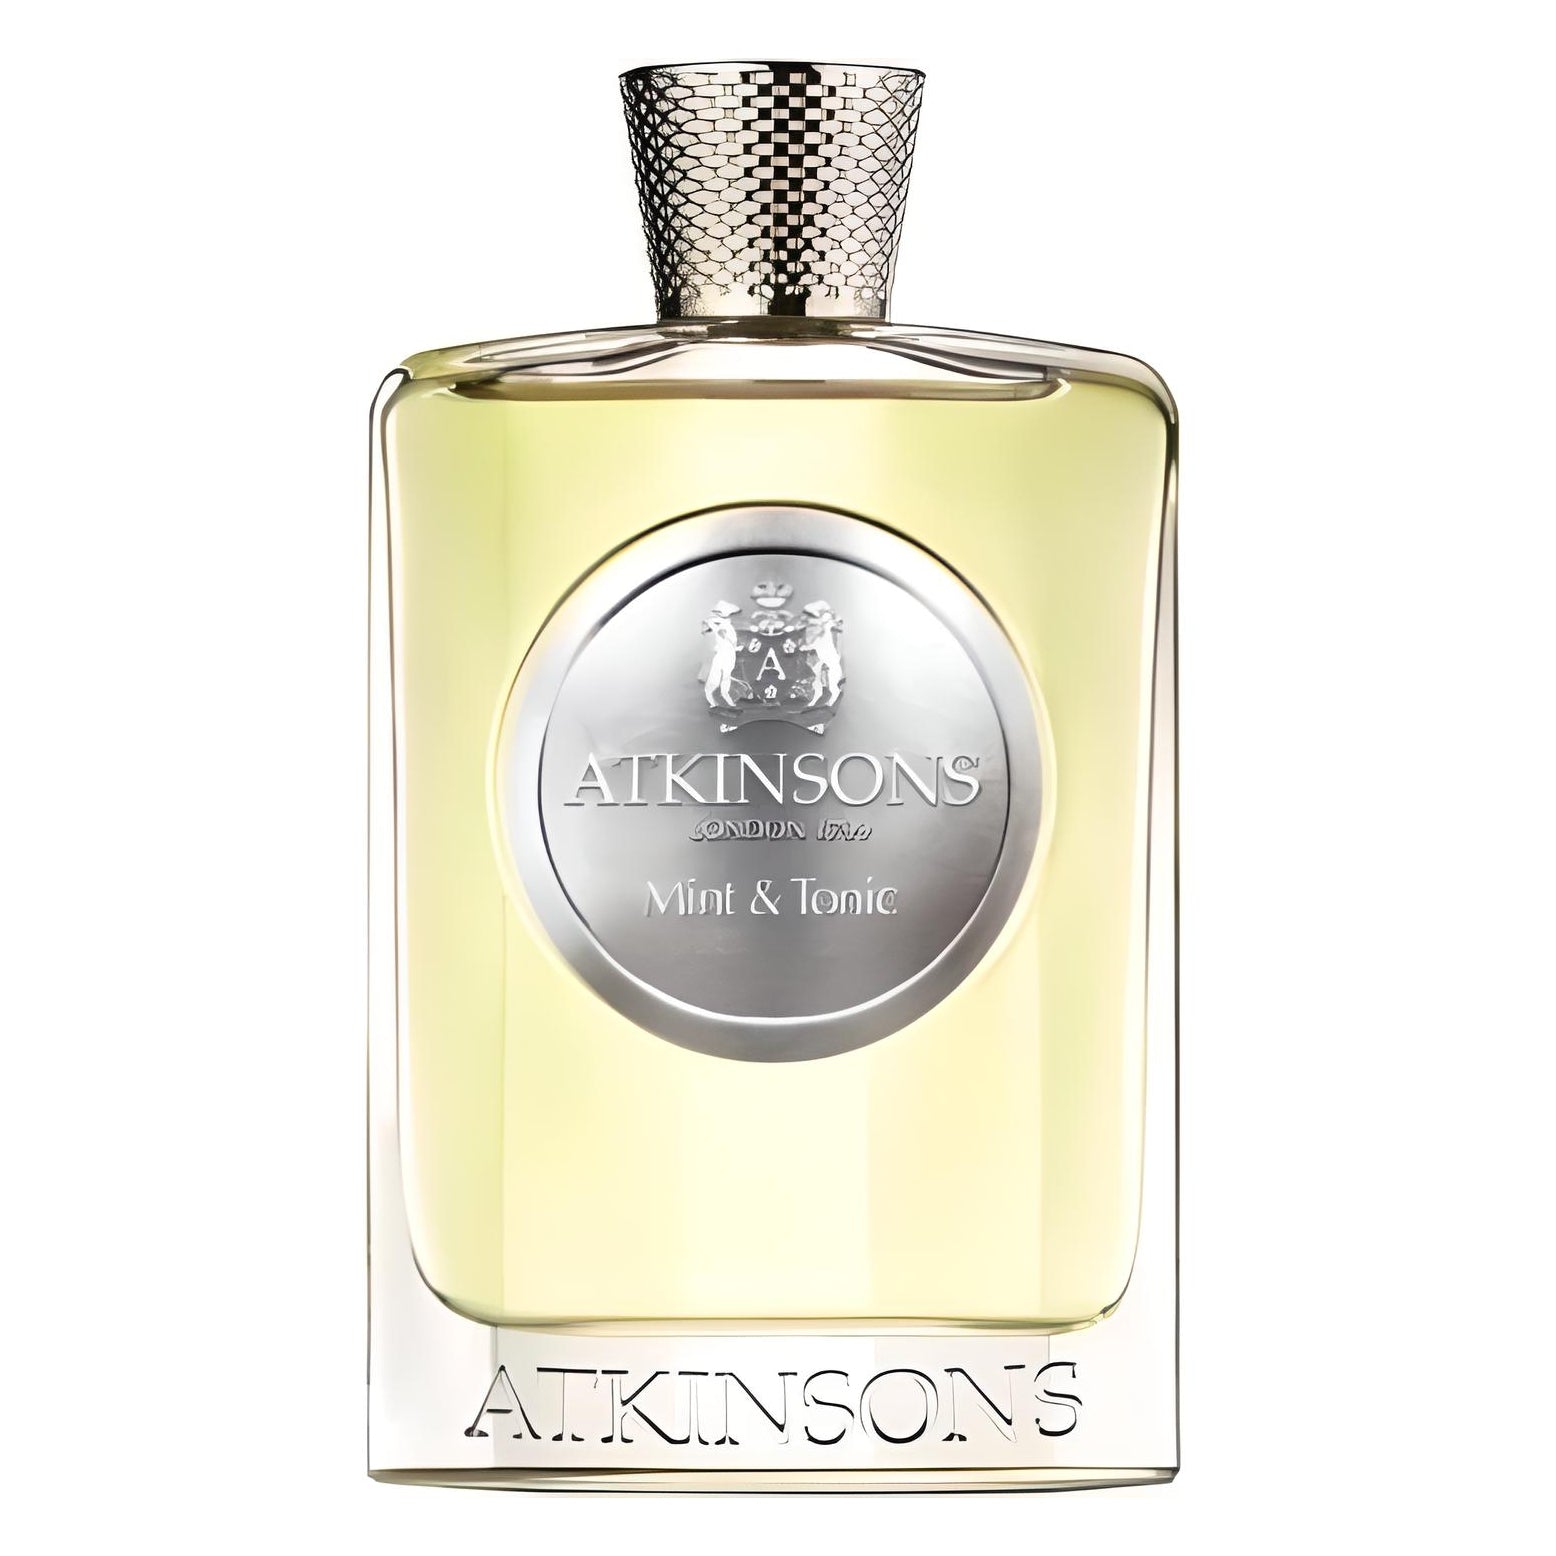 Atkinsons The Eau Collection Mint & Tonic Eau De Parfum Spray